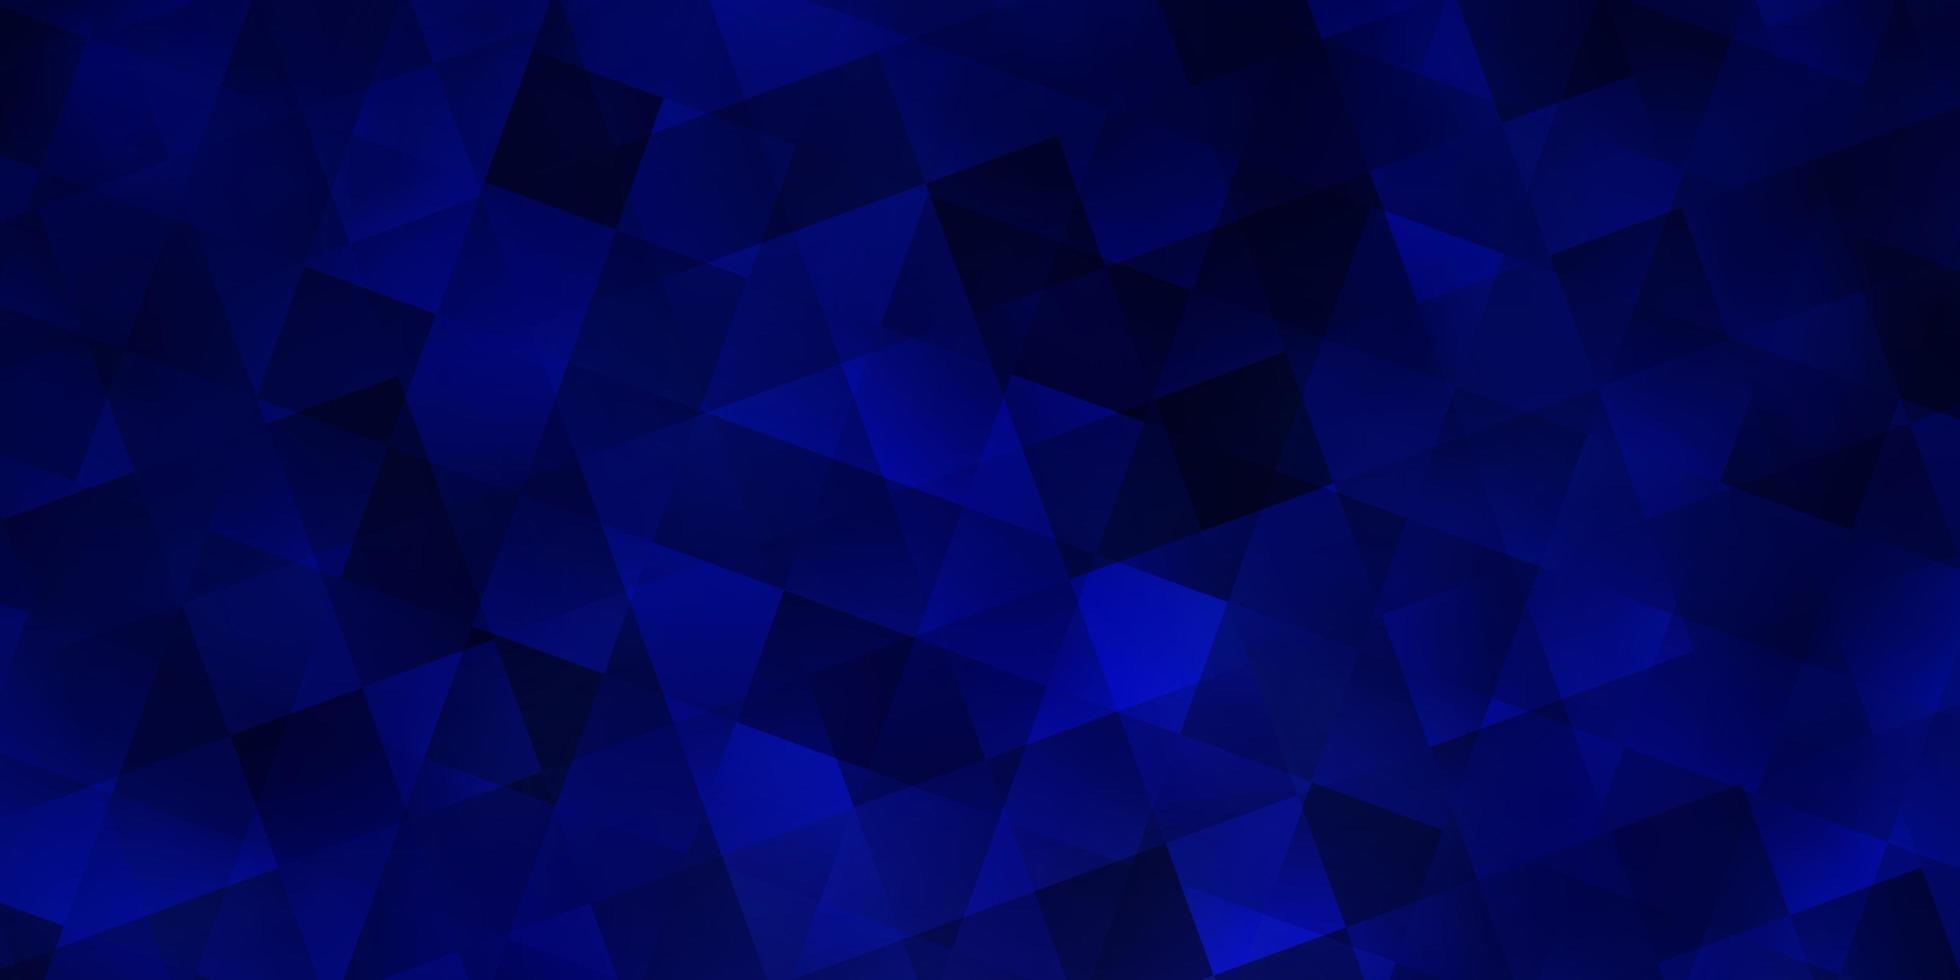 mörkblå vektormall med kristaller, rutor. vektor